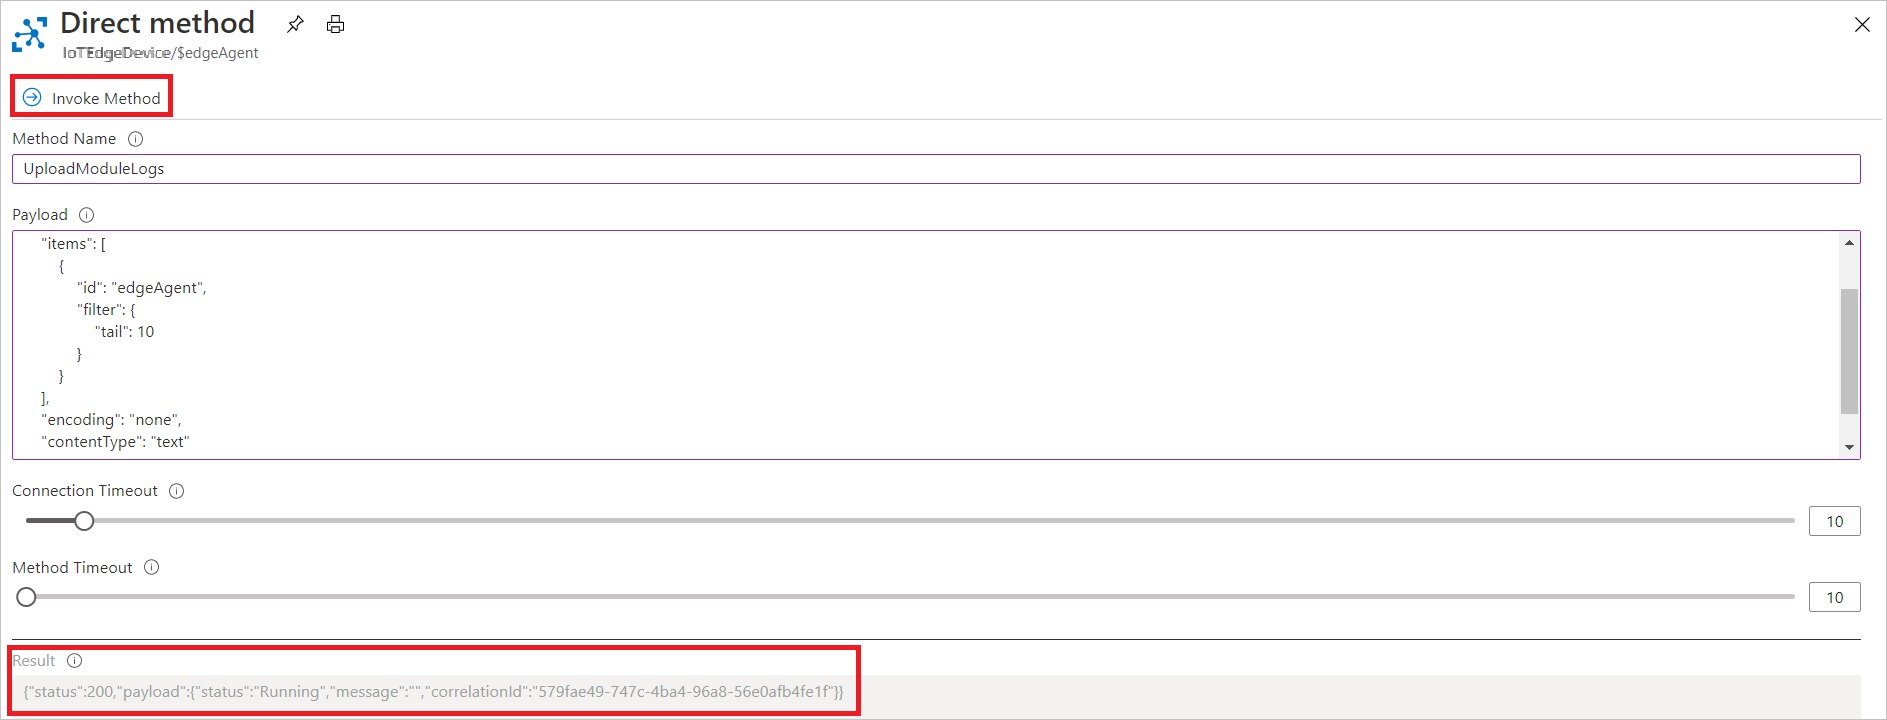 Captura de tela de como invocar o método direto UploadModuleLogs no portal do Microsoft Azure.